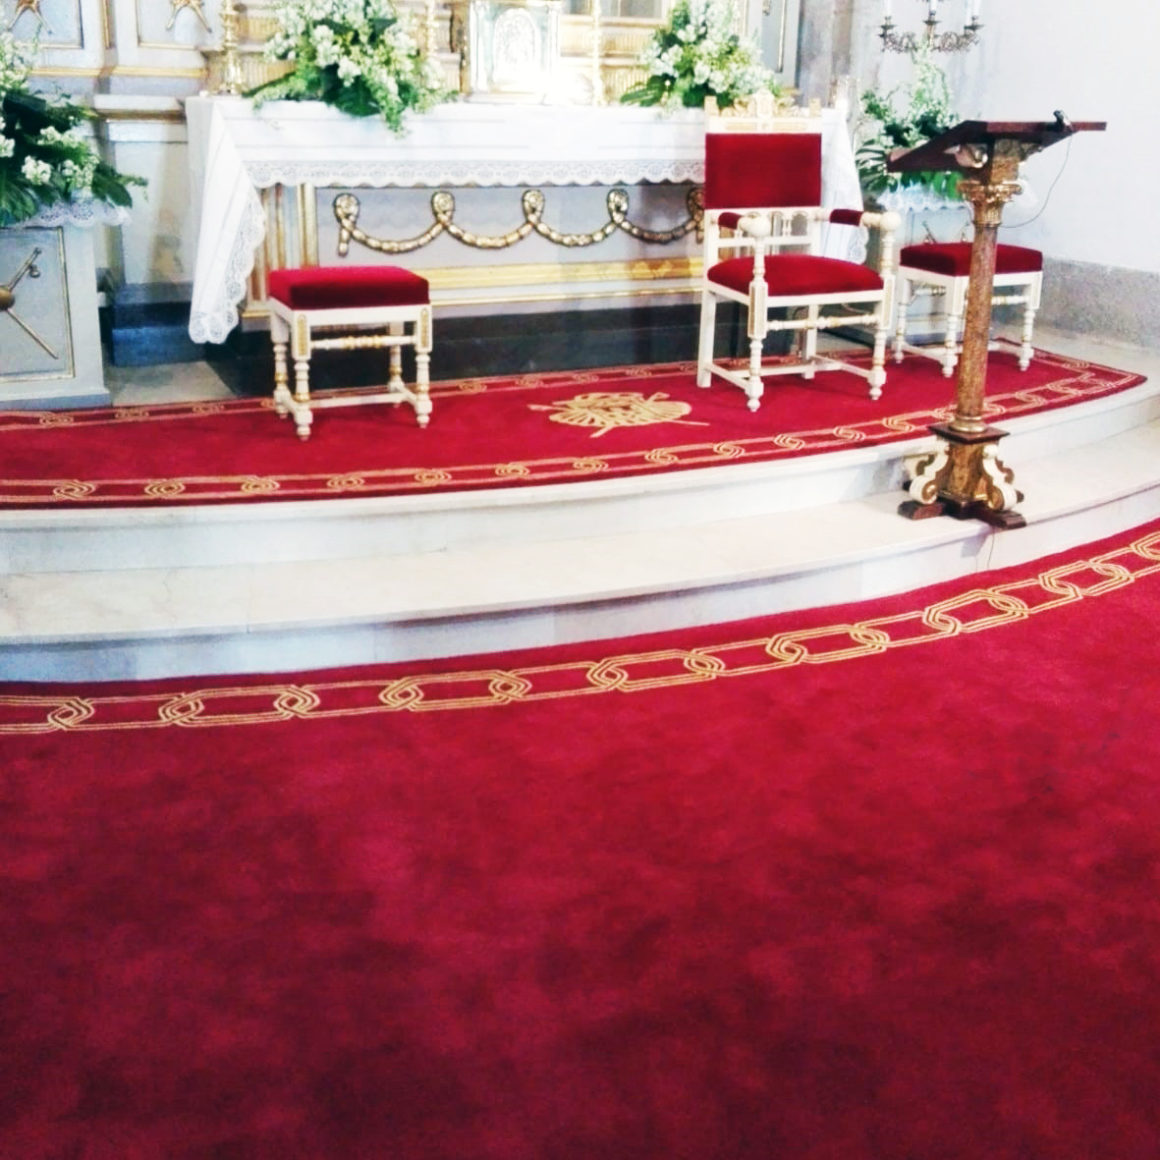 El Santuario de la Virgen Peregrina luce preciosas alfombras confeccionadas a mano